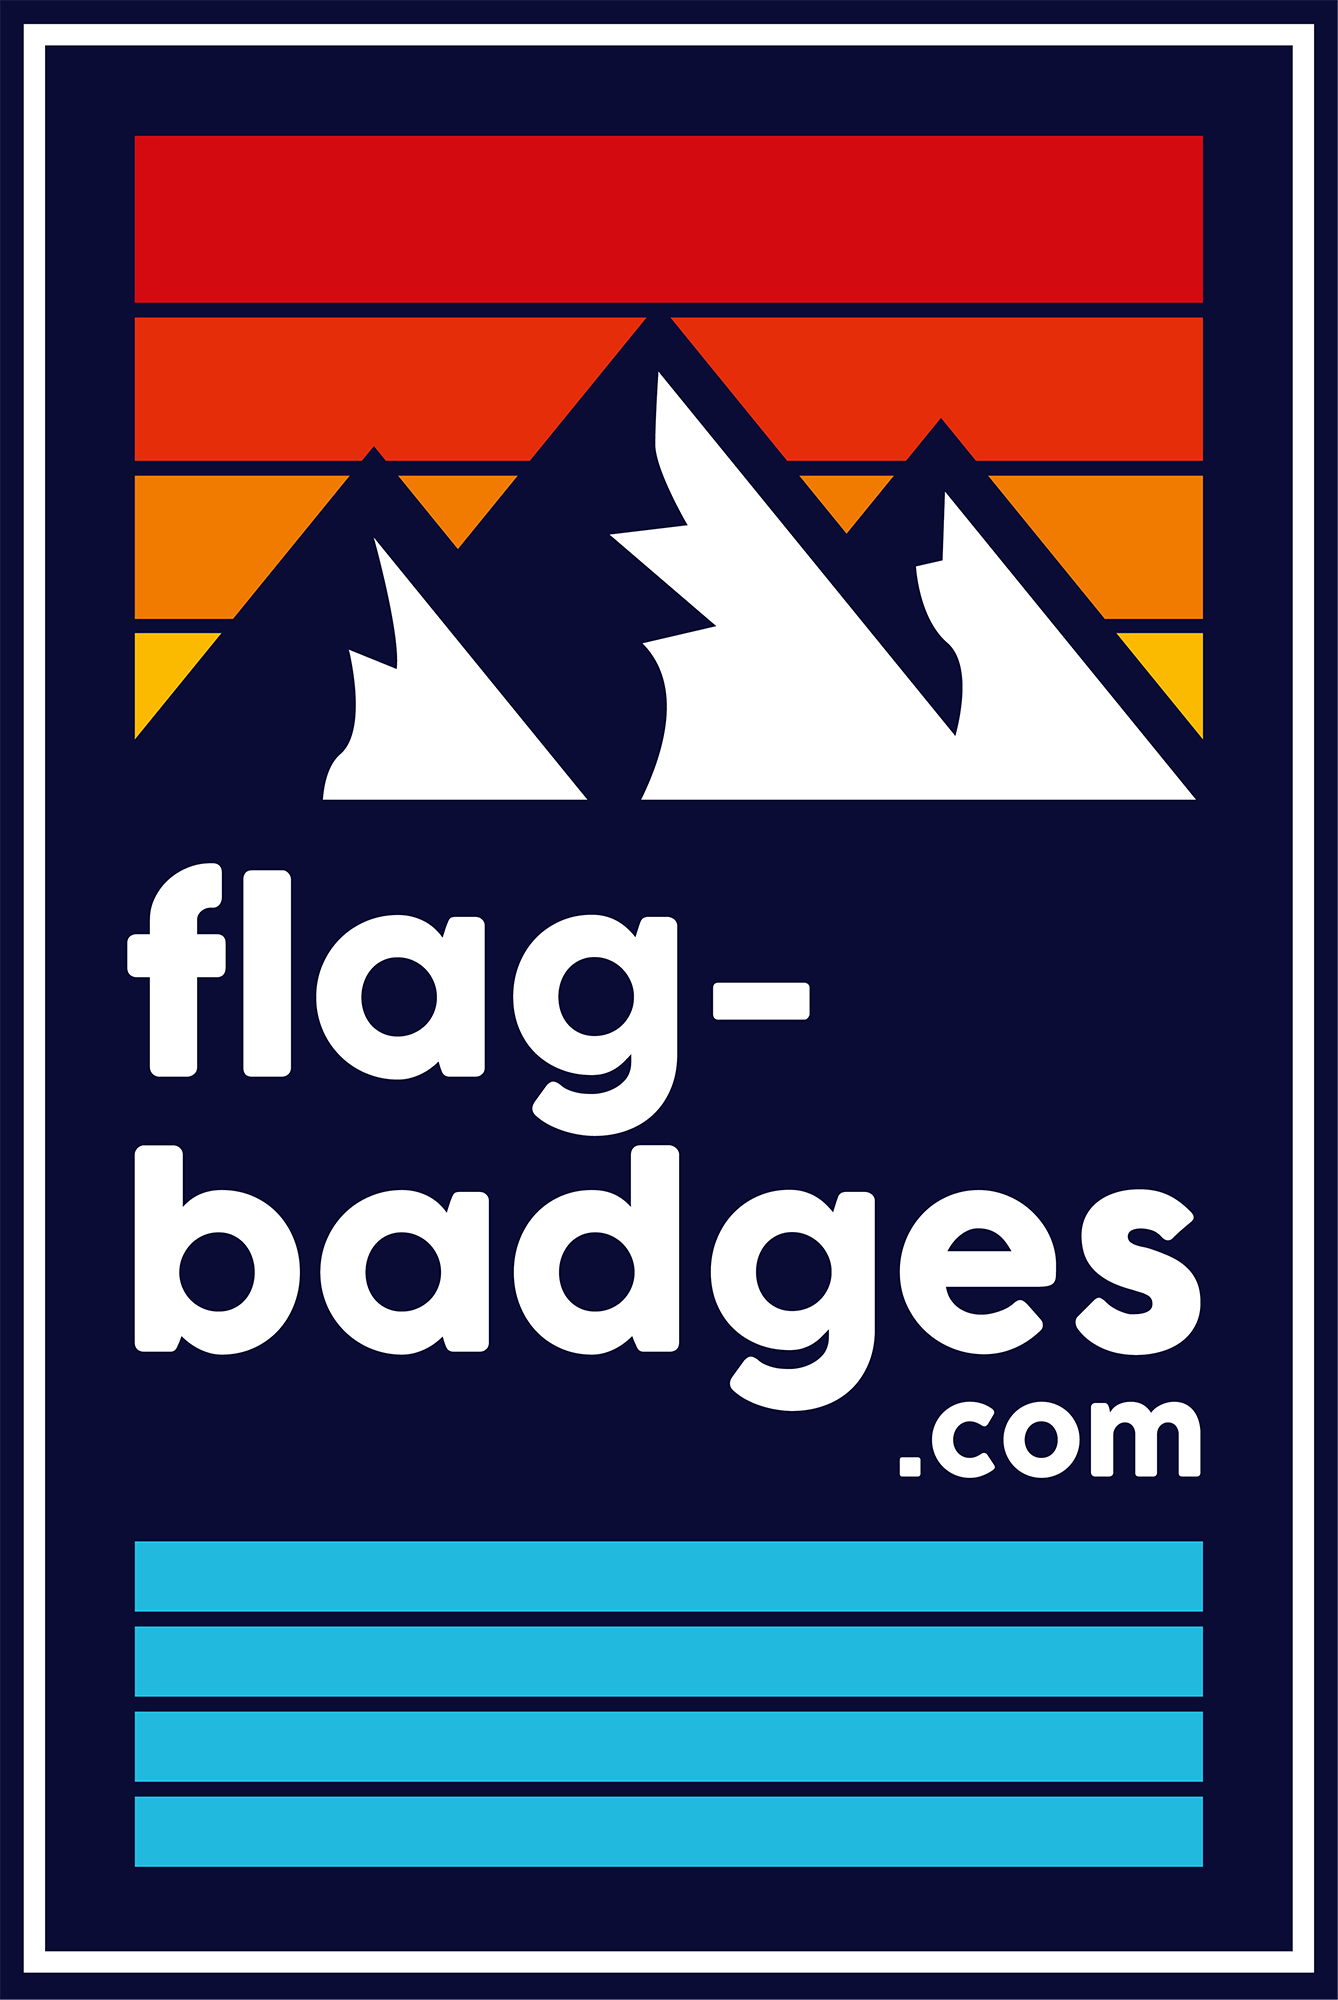 Flag-badges.com